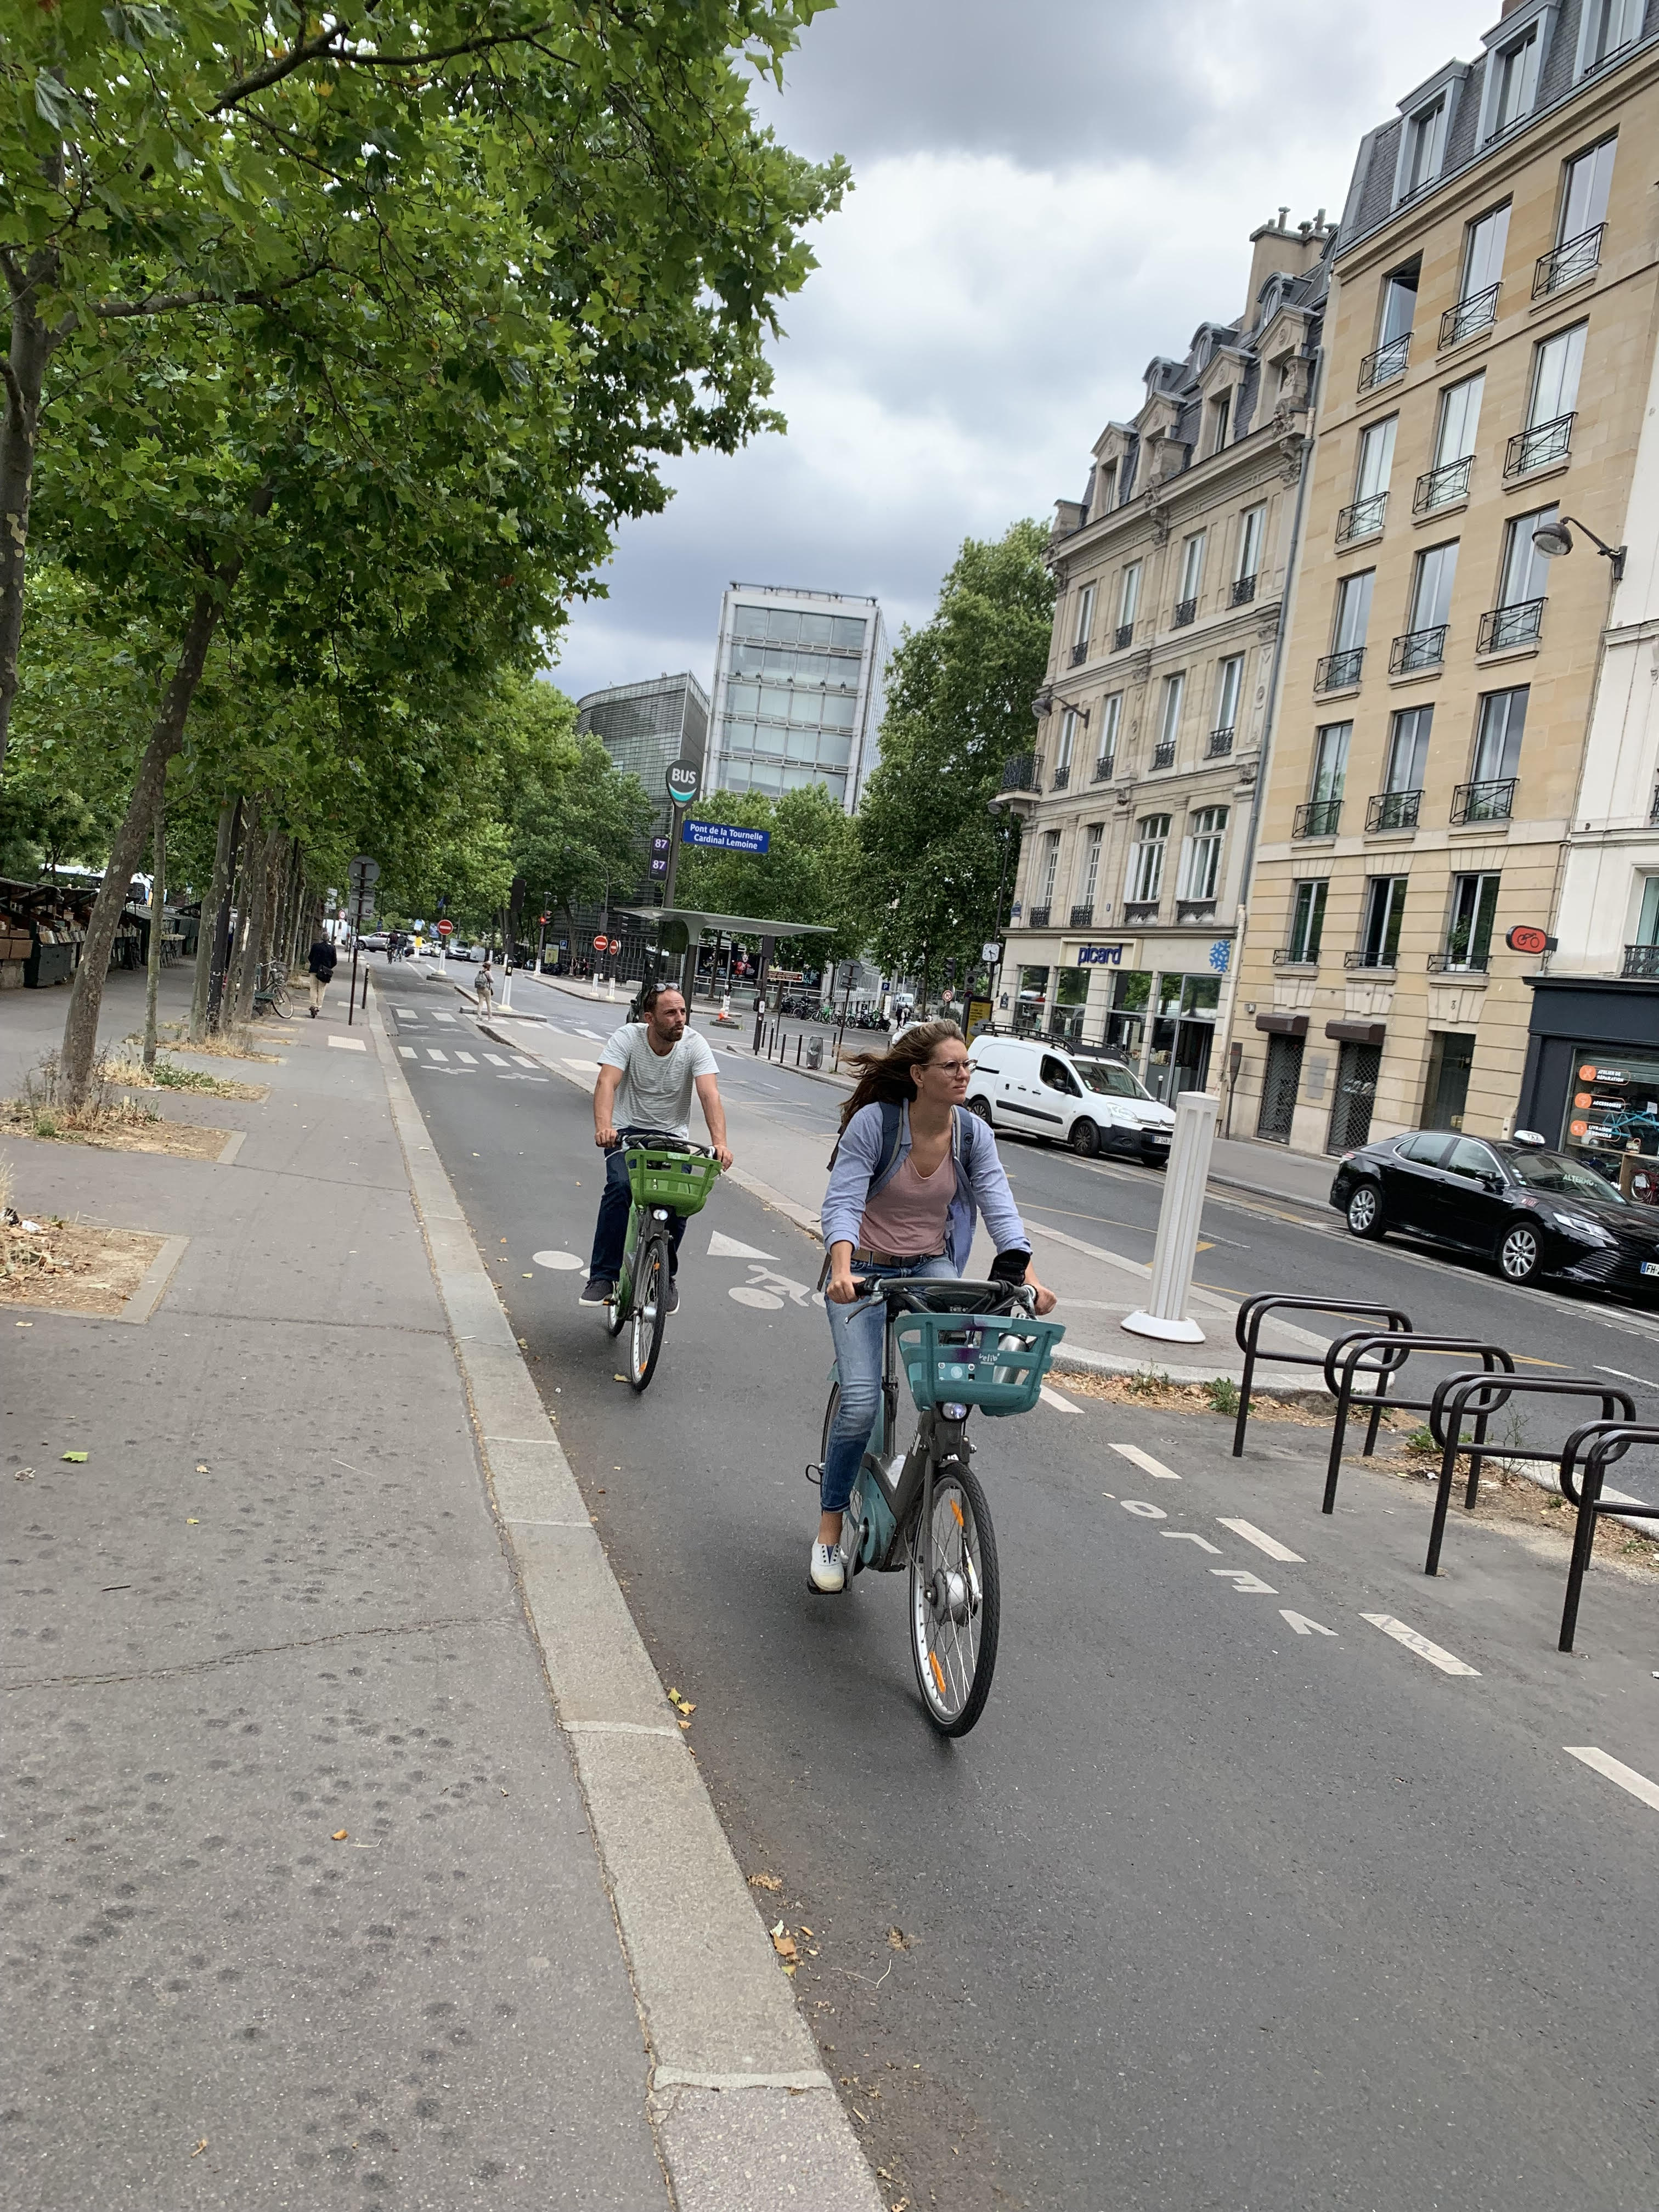 Bike path in Paris